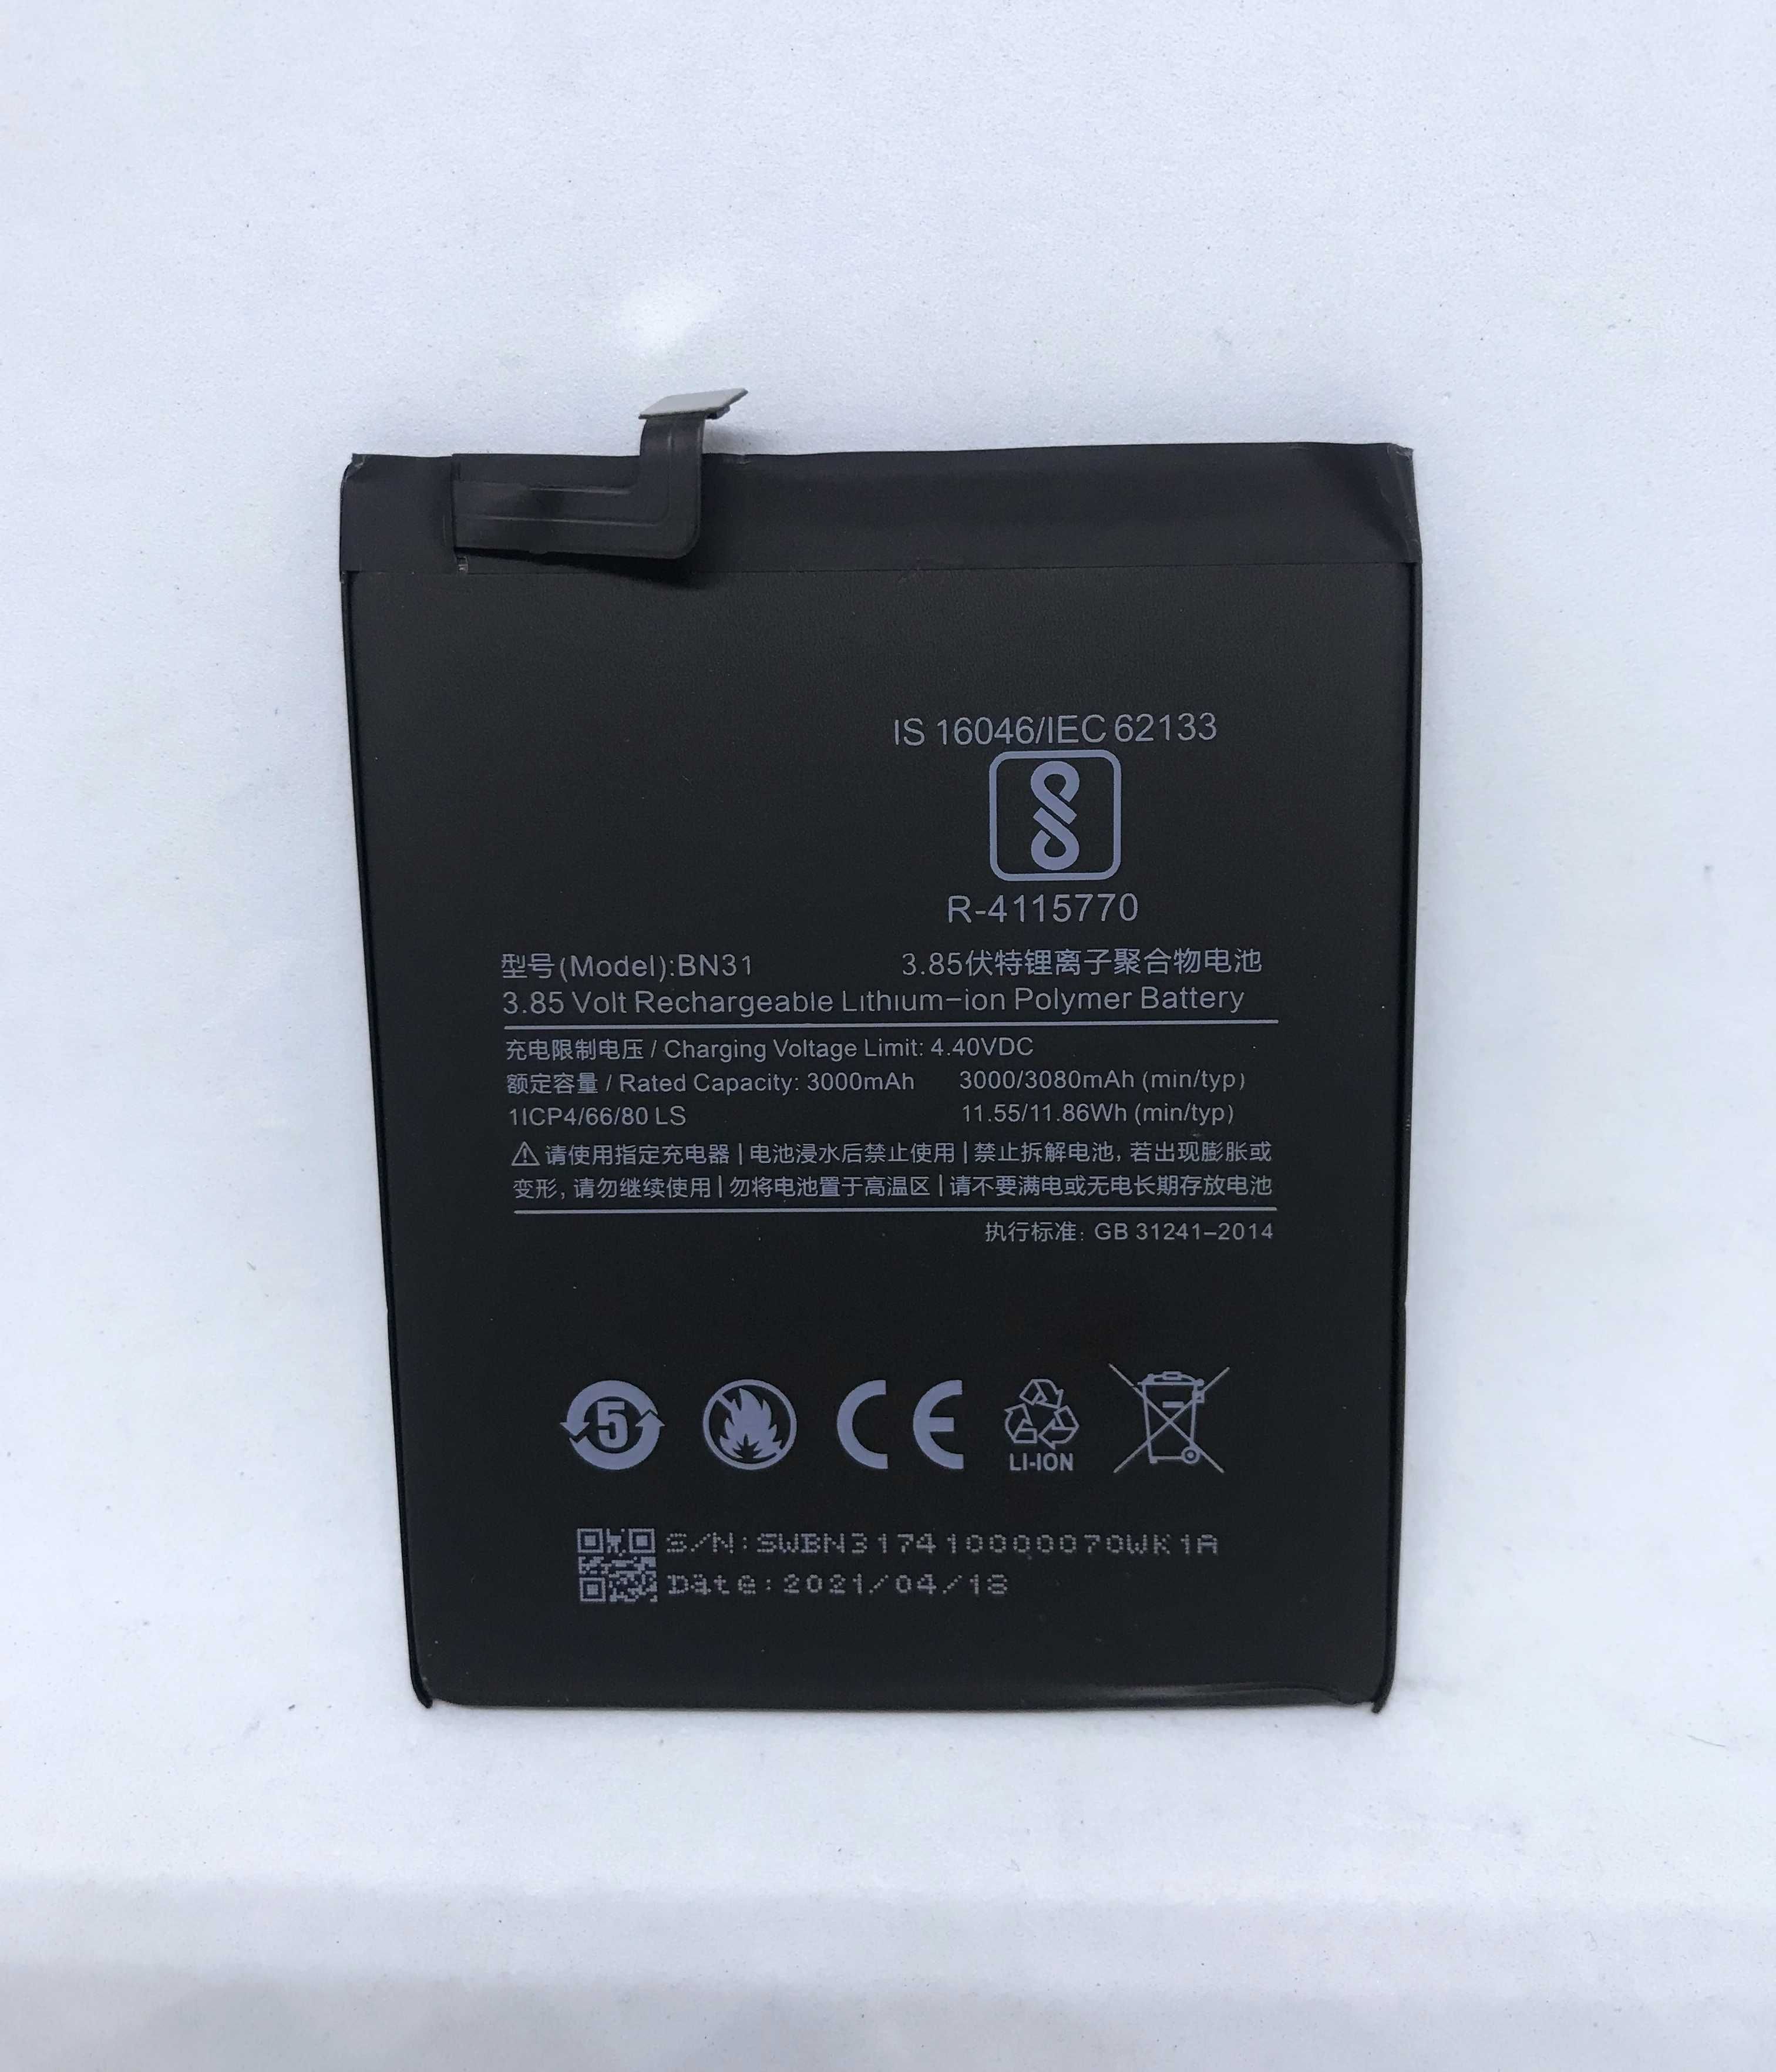 Bateria Original Xiaomi Mi A1 / Xiaomi Redmi Note 5A / Redmi S2 - BN31  Creixomil • OLX Portugal